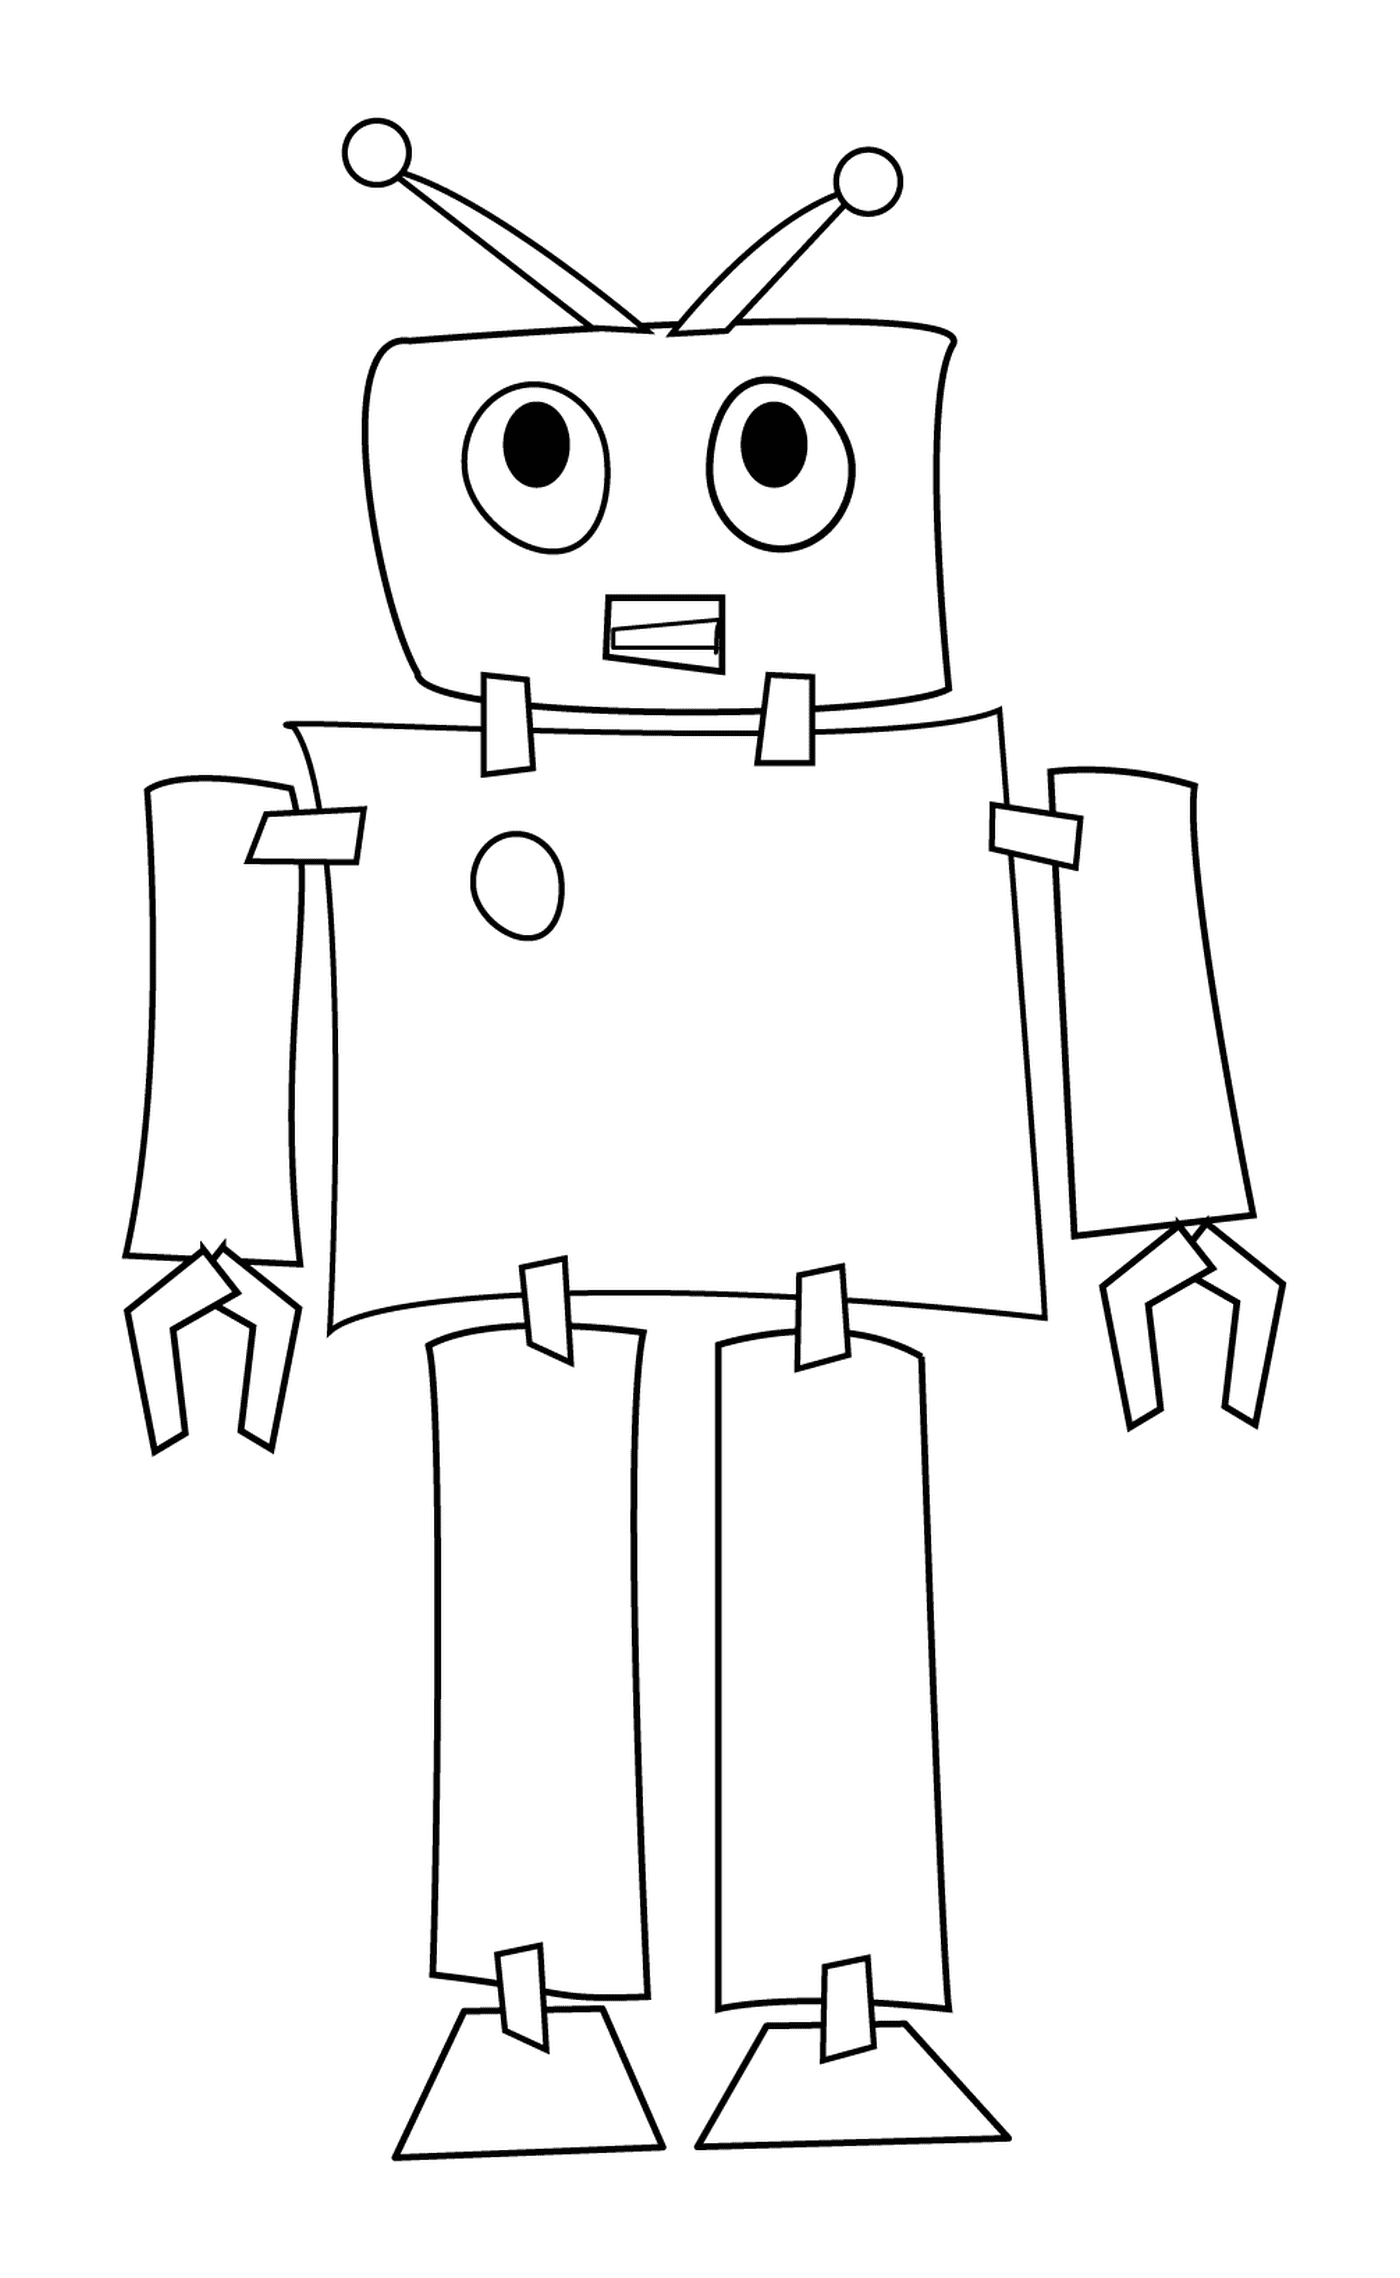  Robot programado por ordenador 